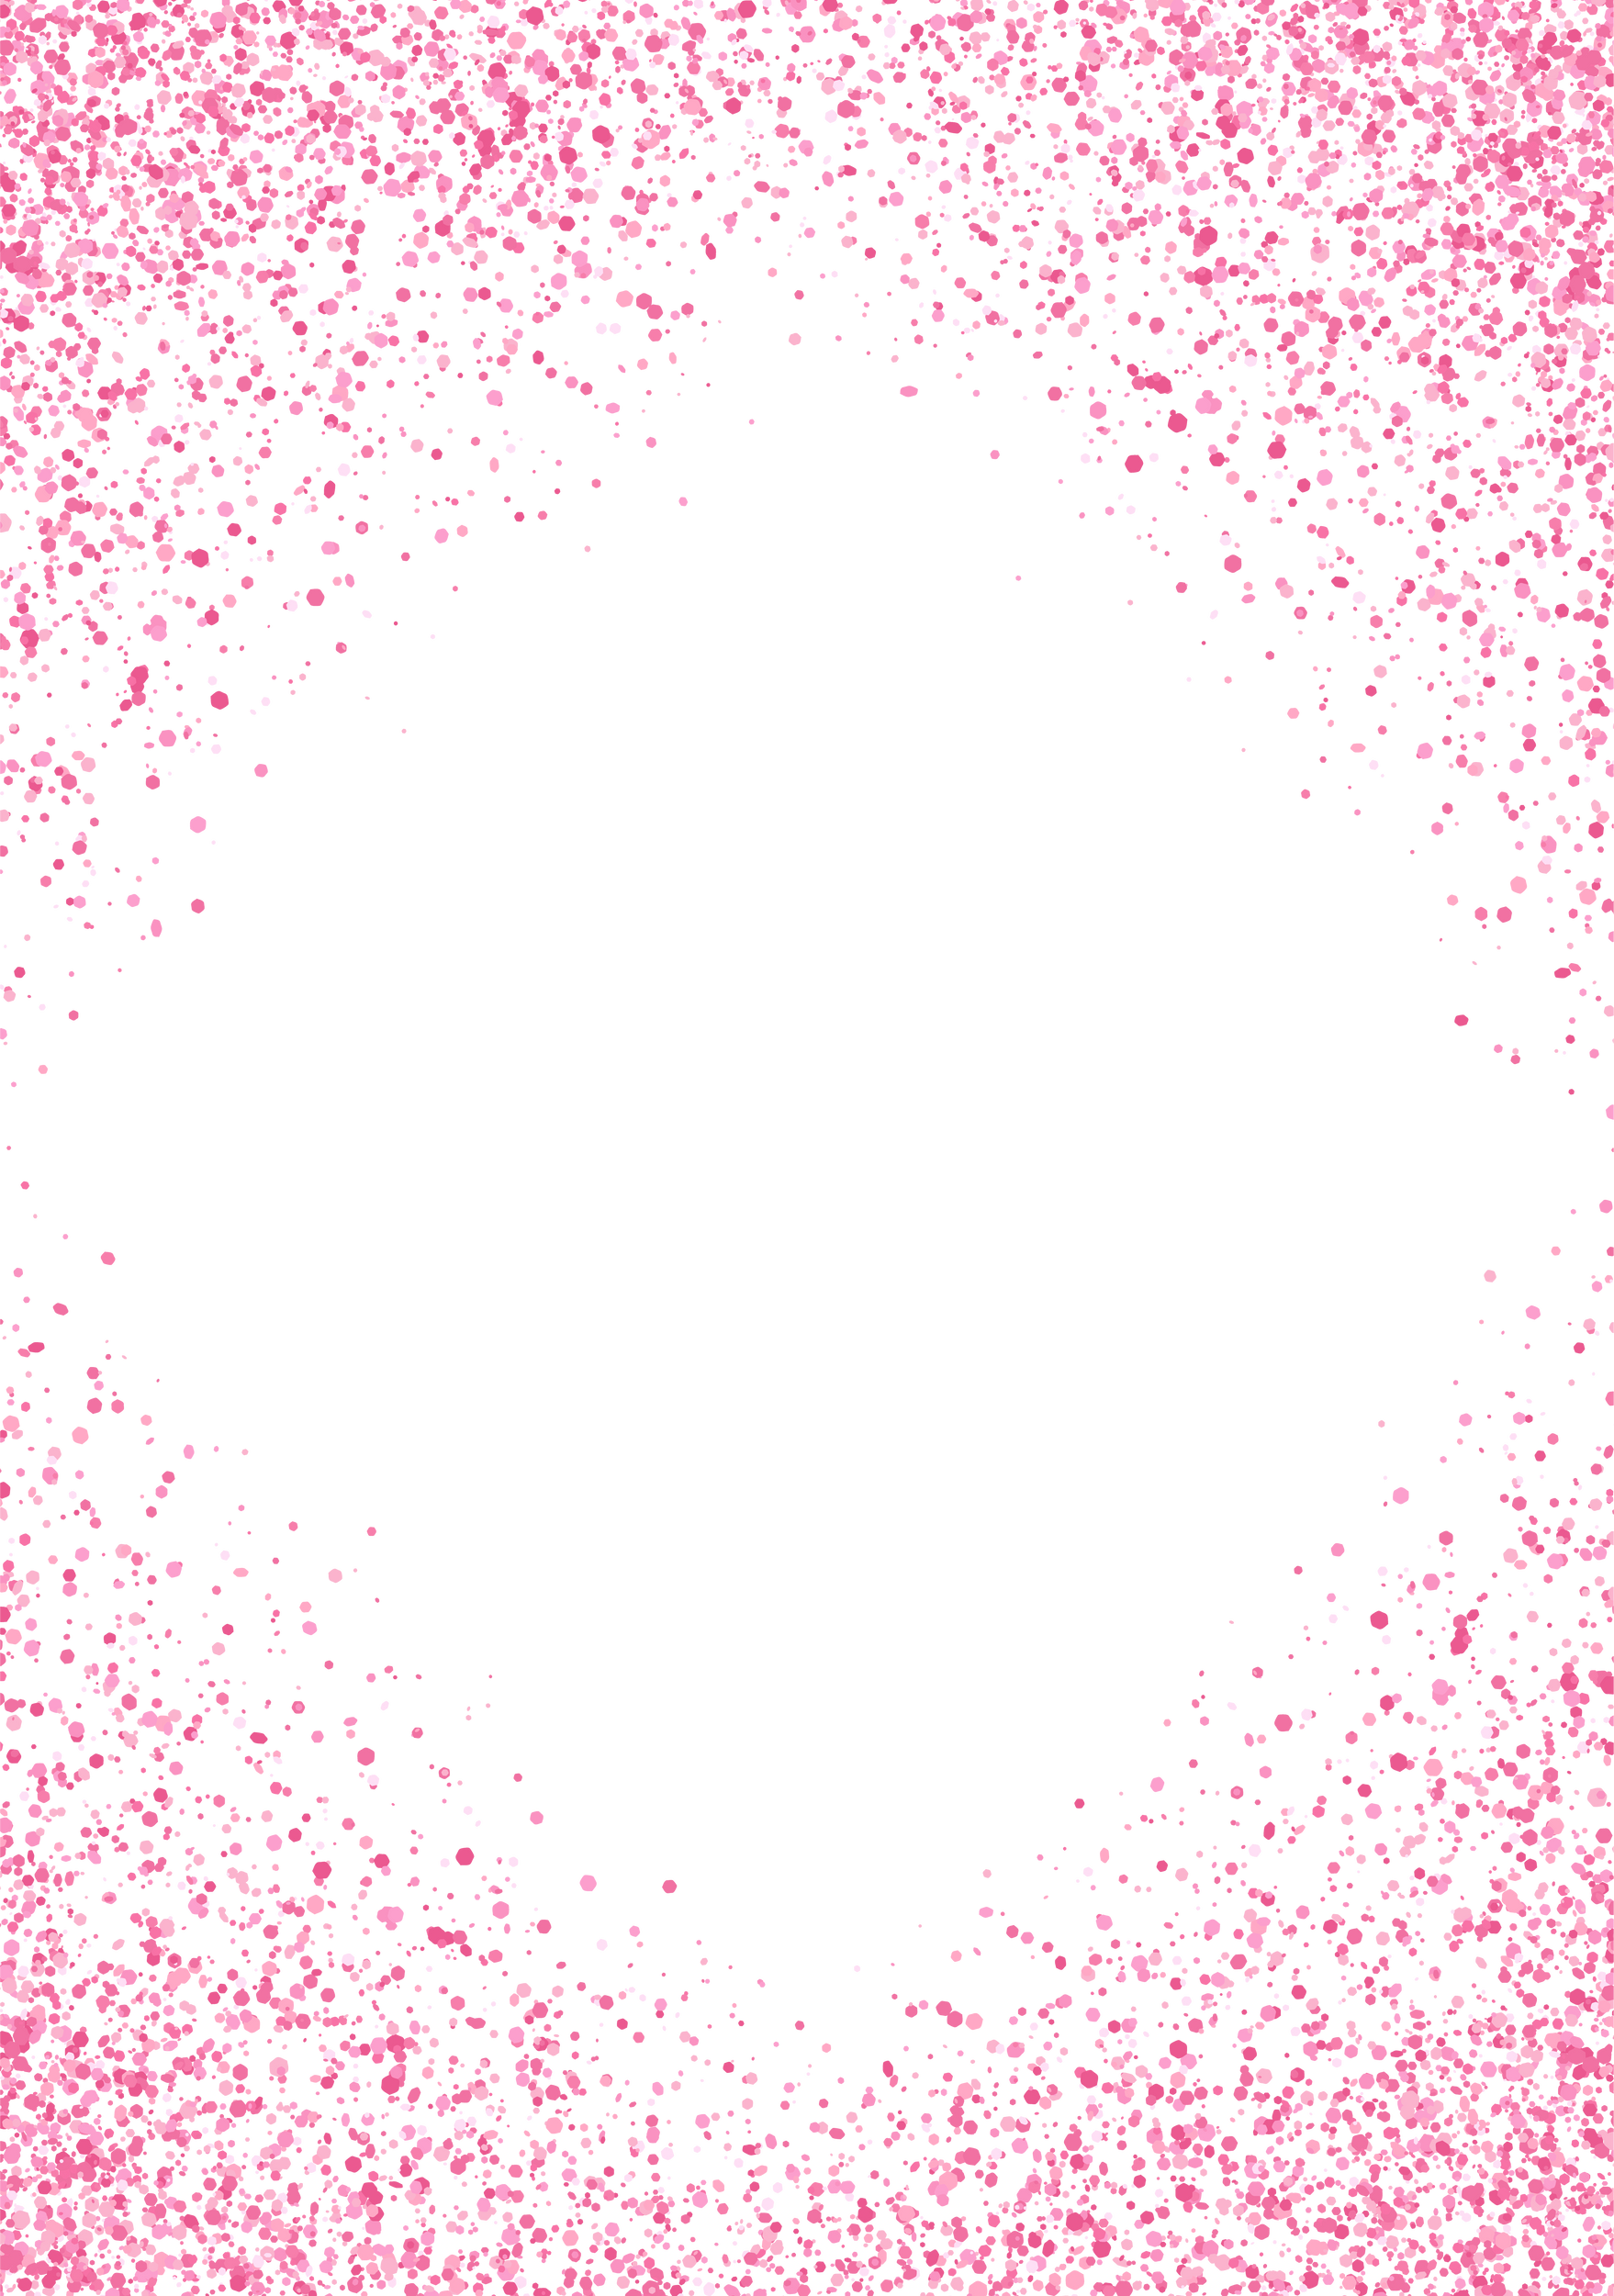 Hot pink sparkling glitter rhomb frame